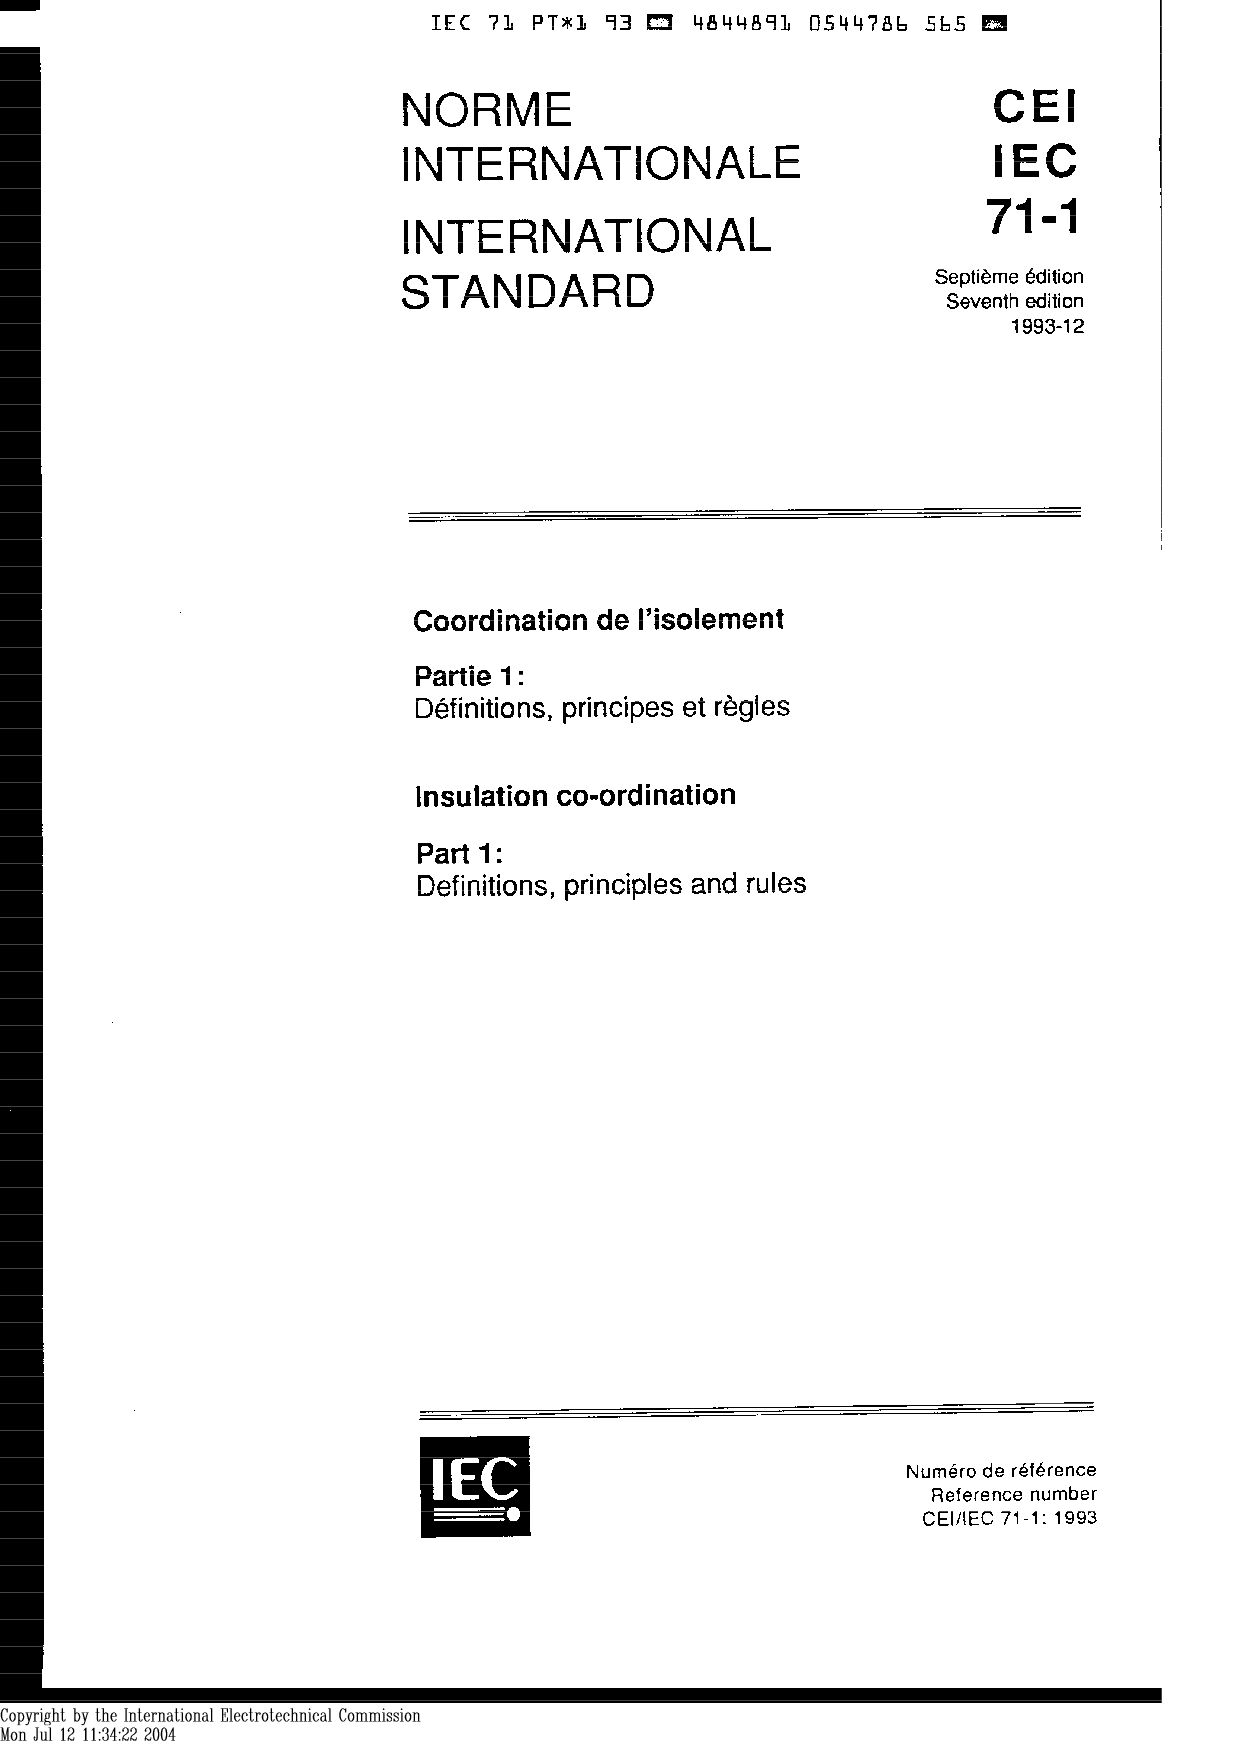 IEC 60071-1:1993封面图